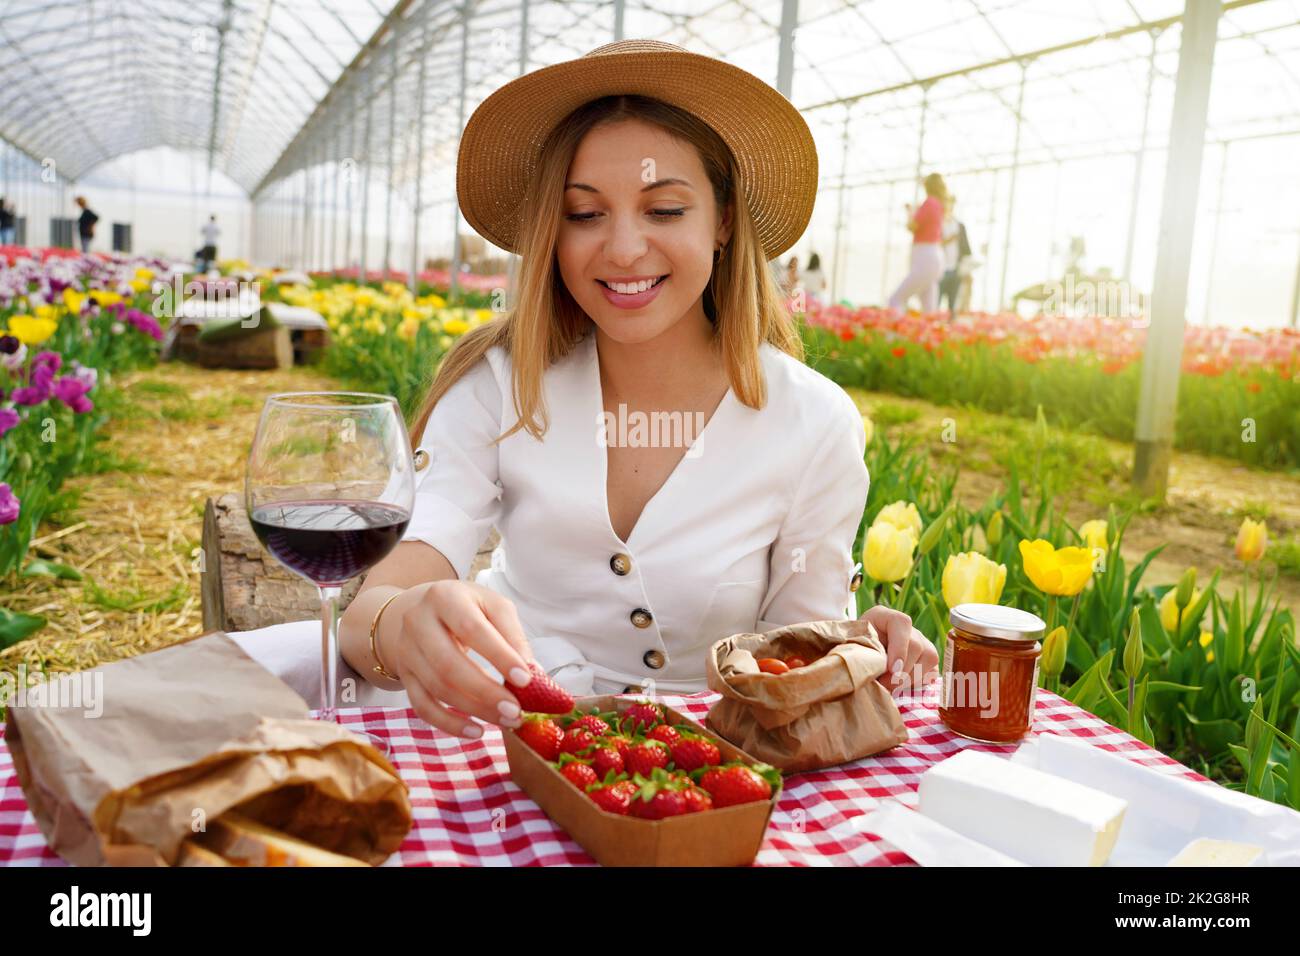 Schöne junge Frau mit Picknick. Mädchen nimmt eine Erdbeere. Frische Ernte auf dem Land im Frühling. Stockfoto